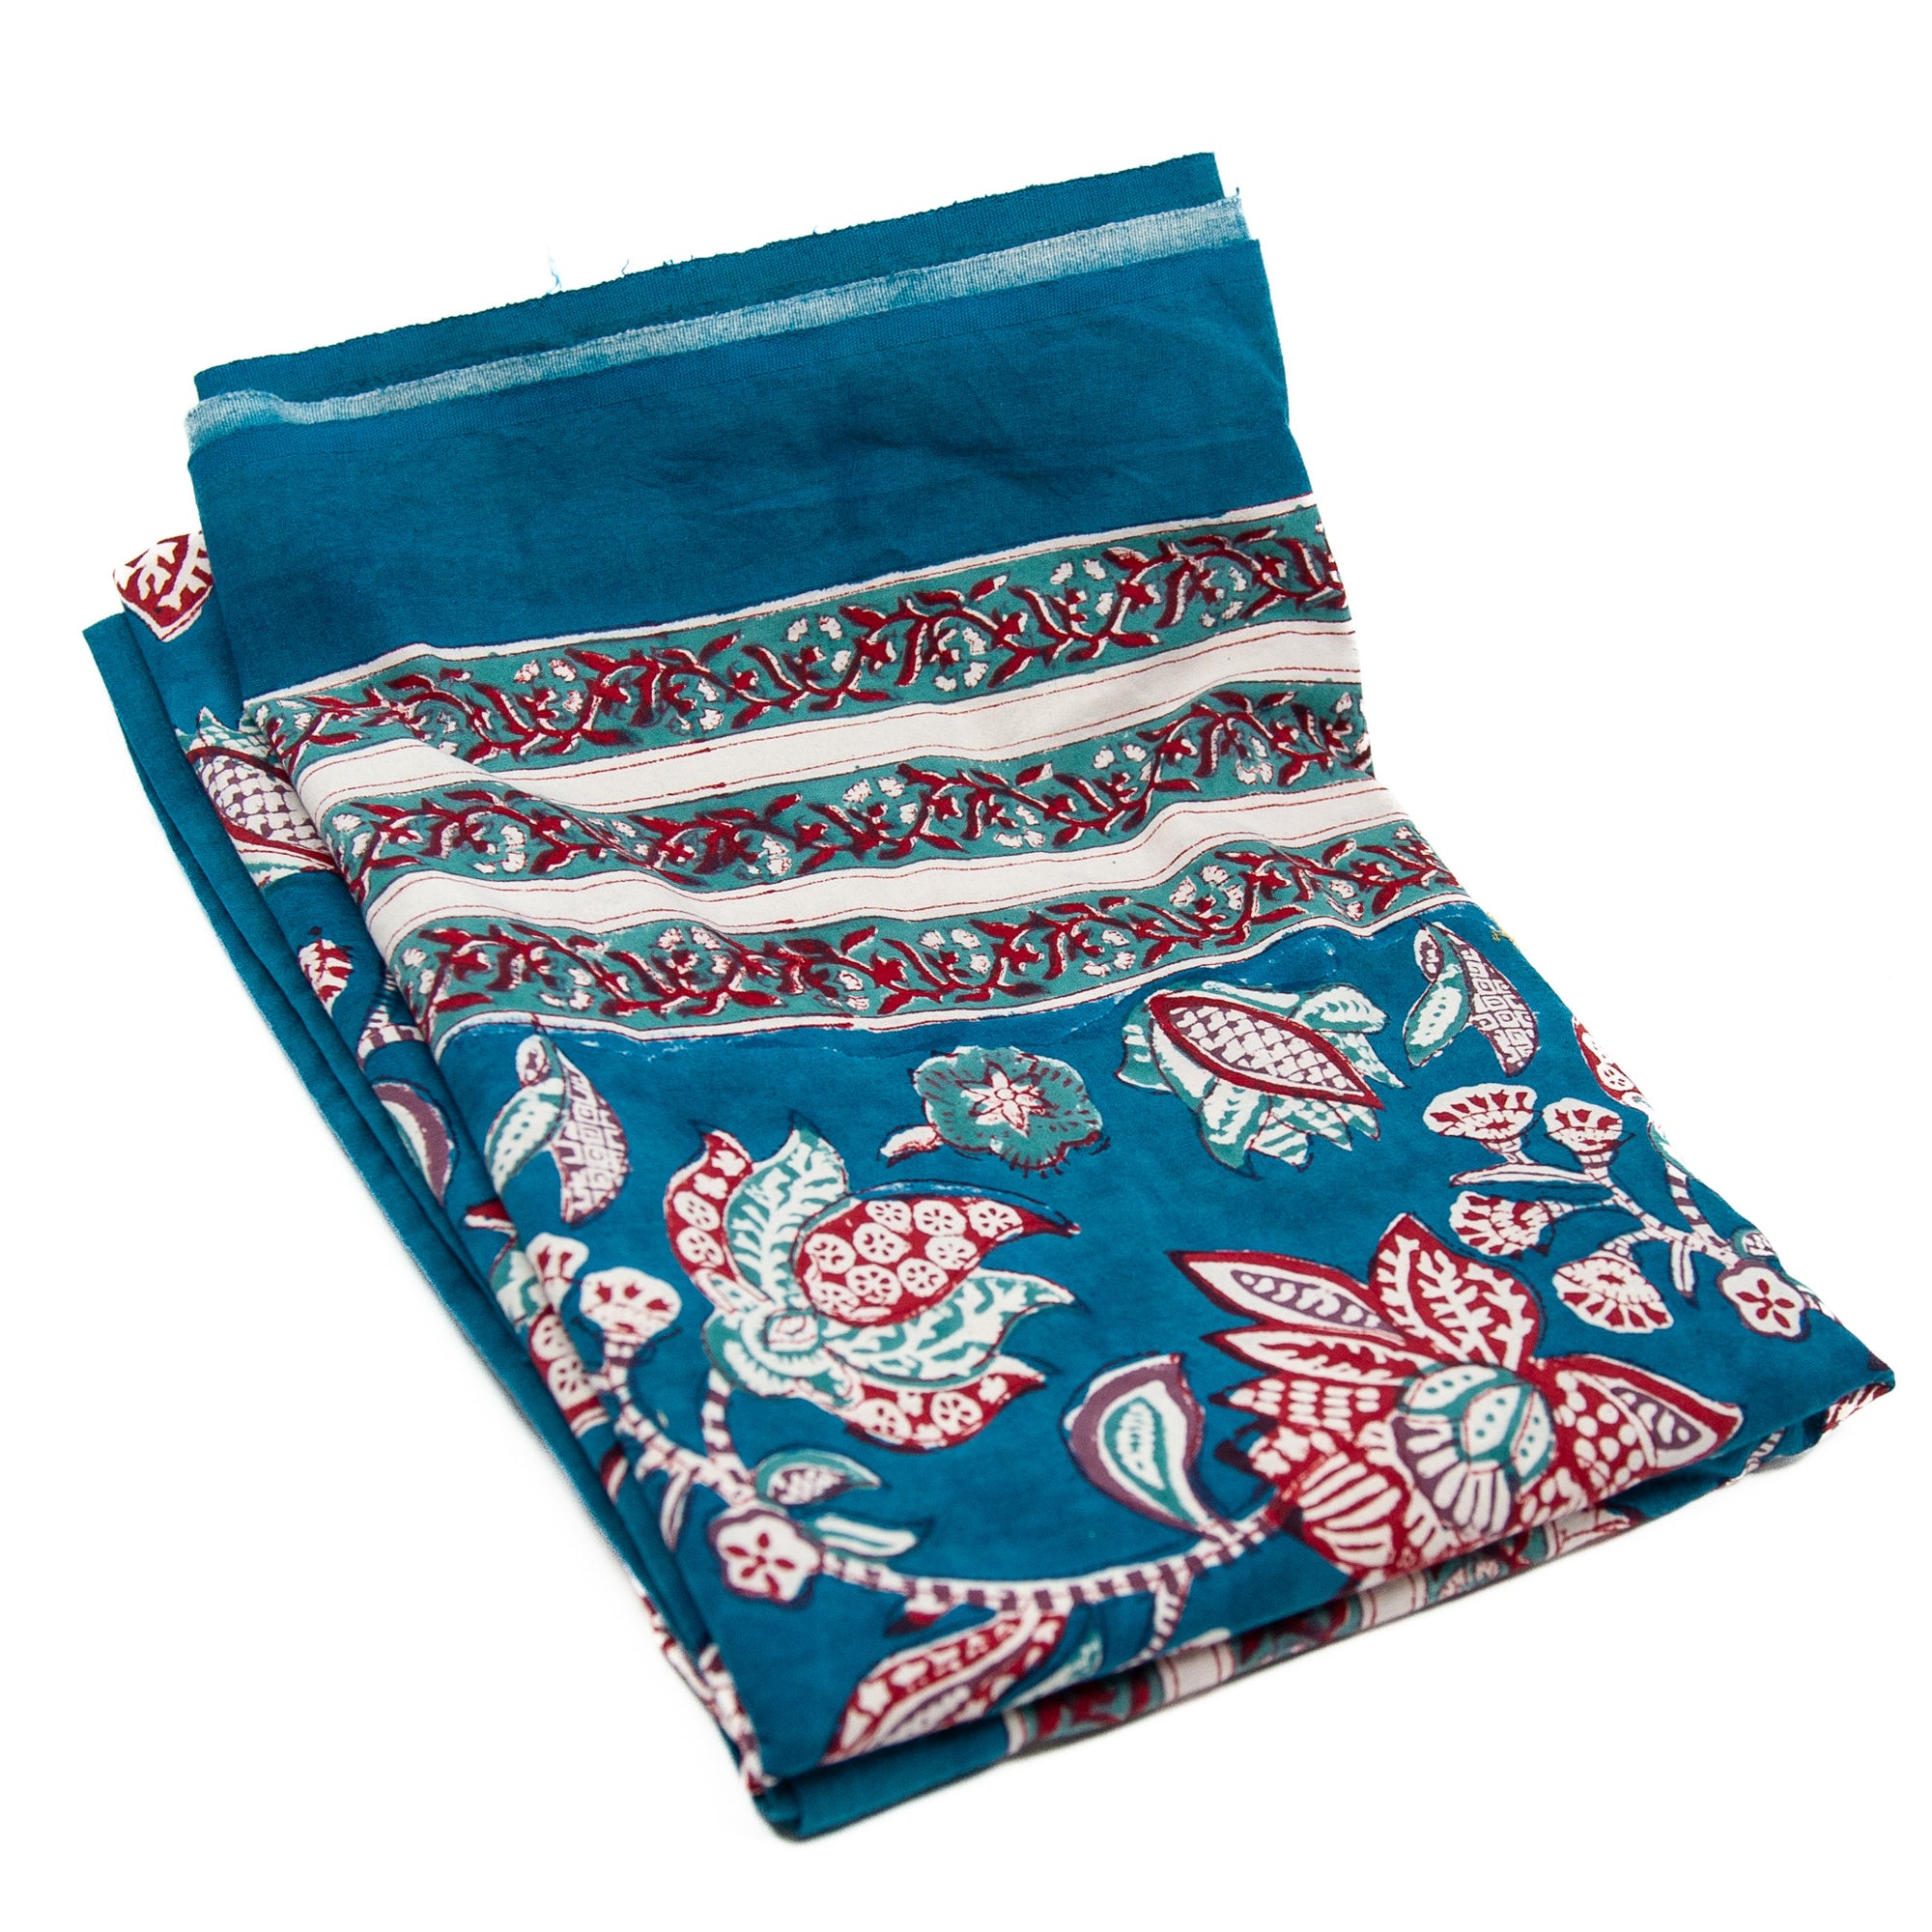 Block Hand Printed Tablecloth - Royal Lotus